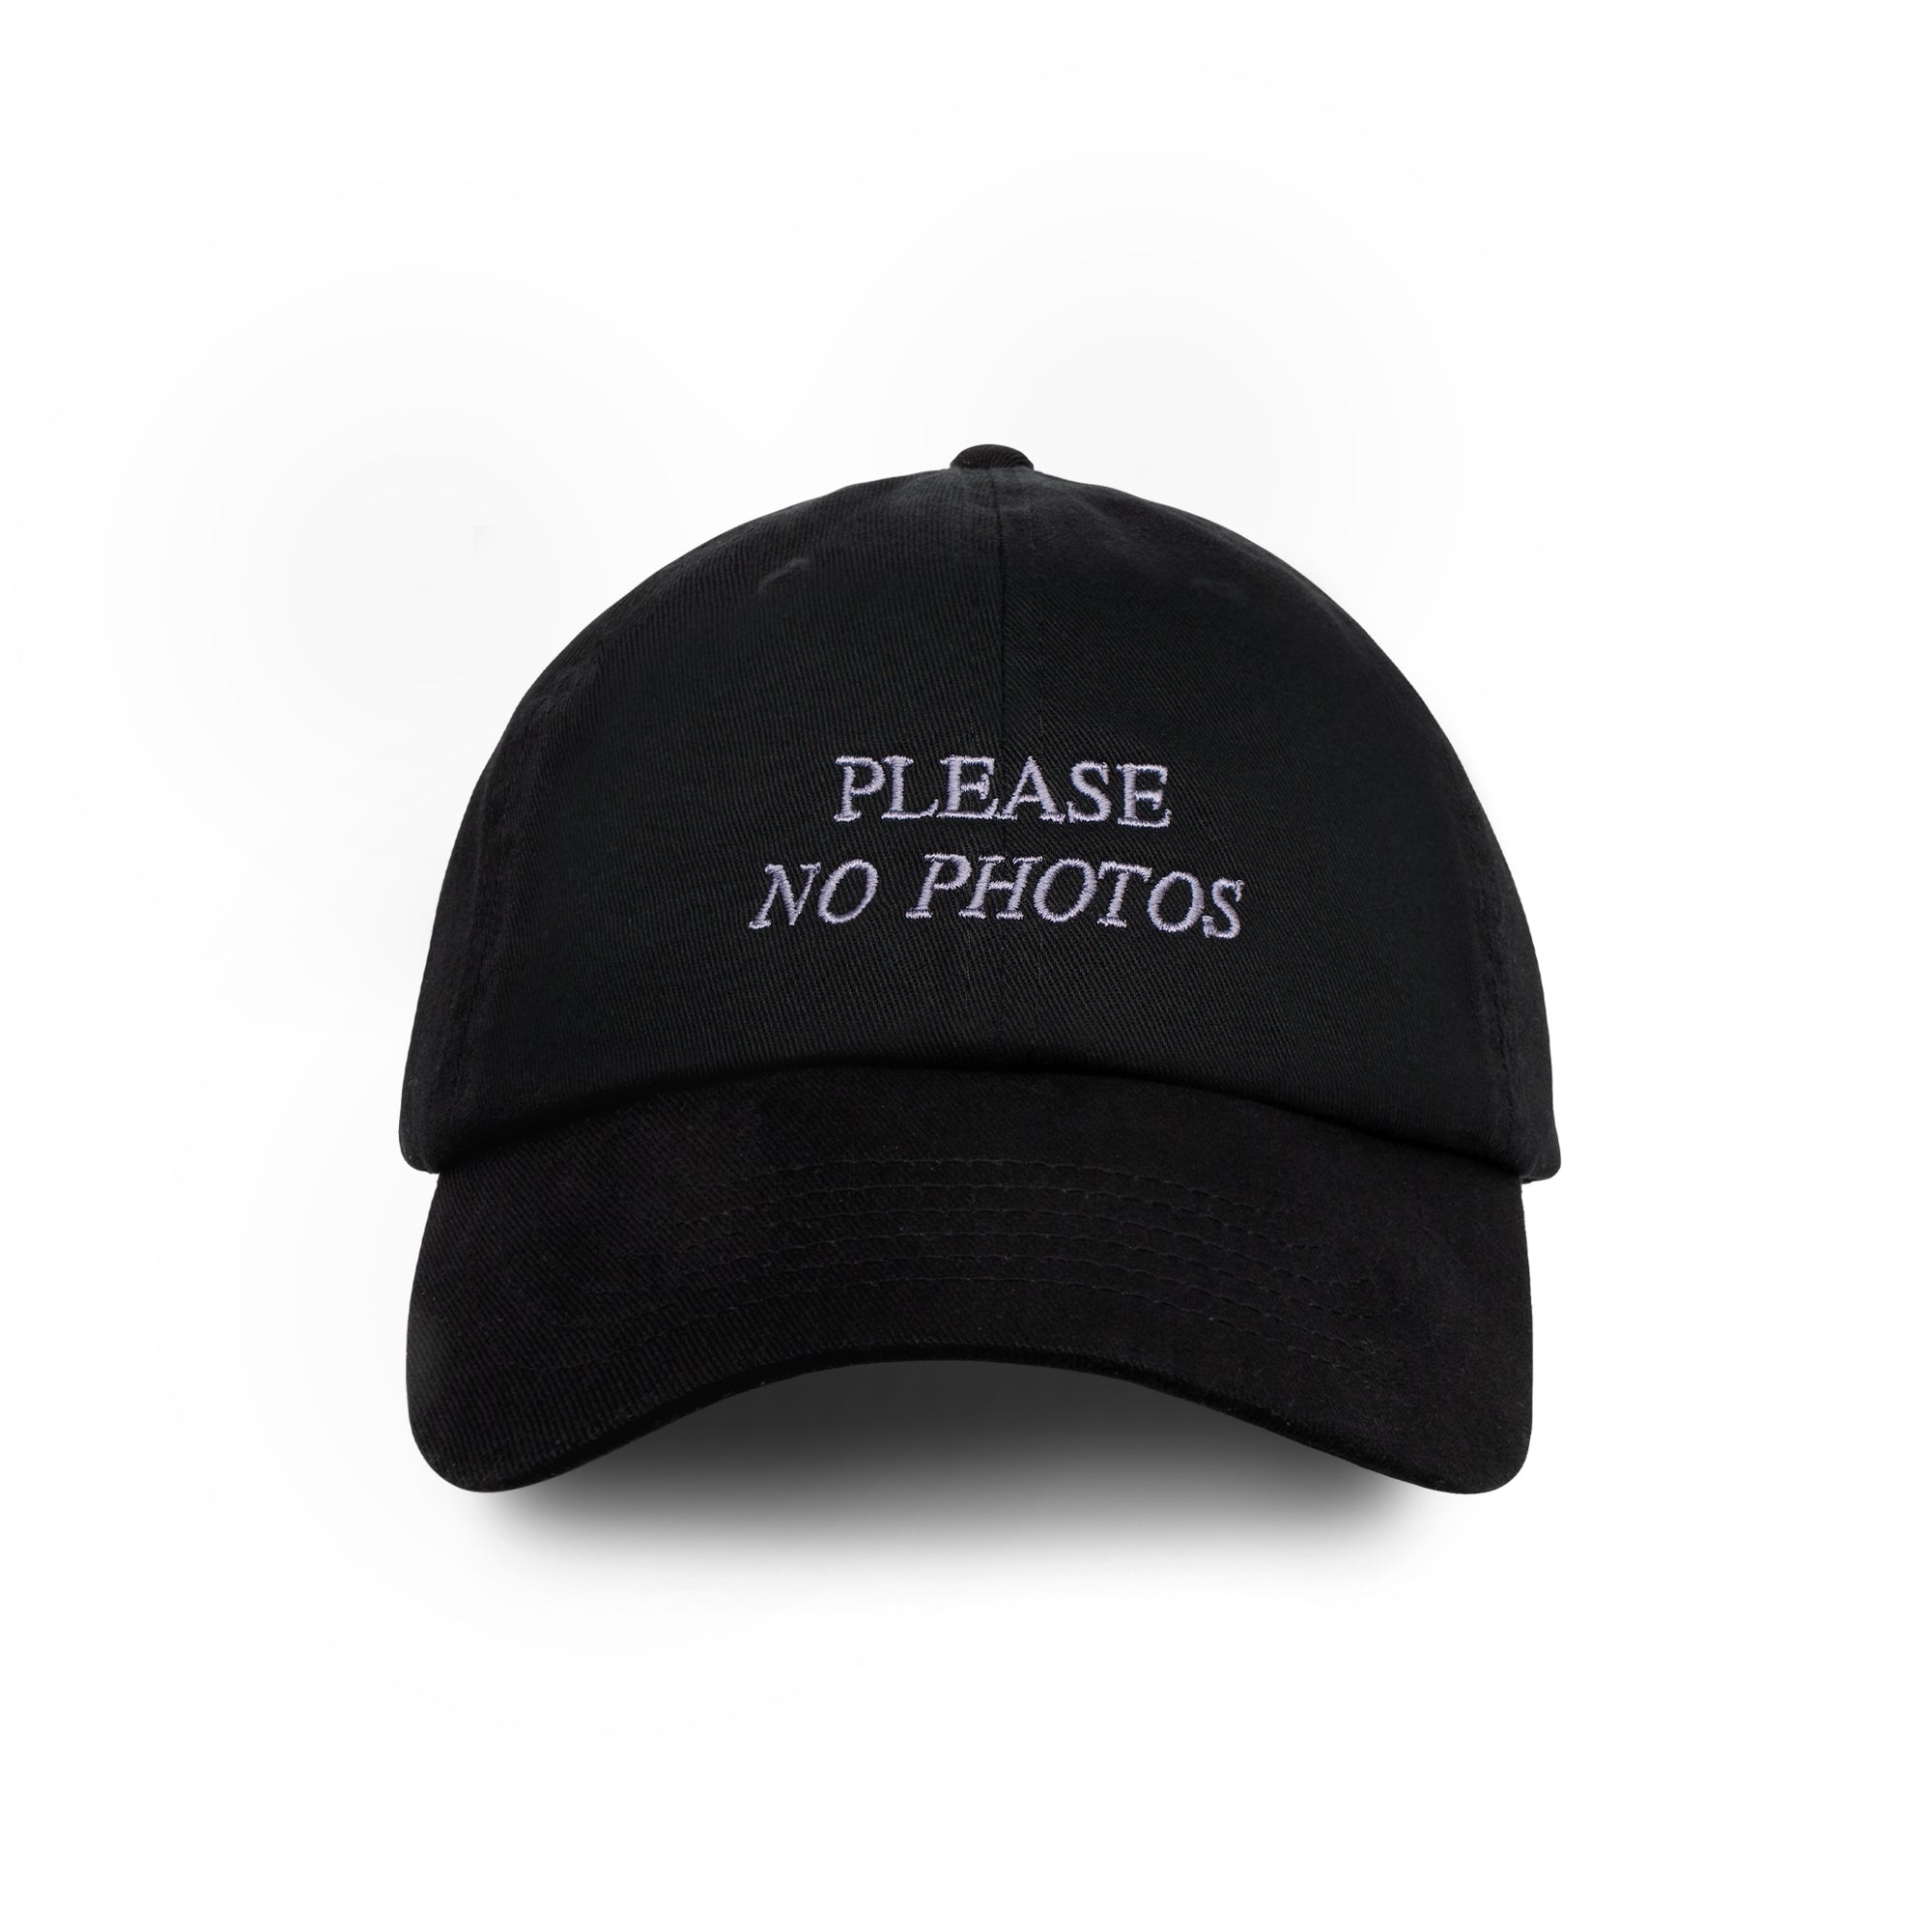 PLEASE NO PHOTOS